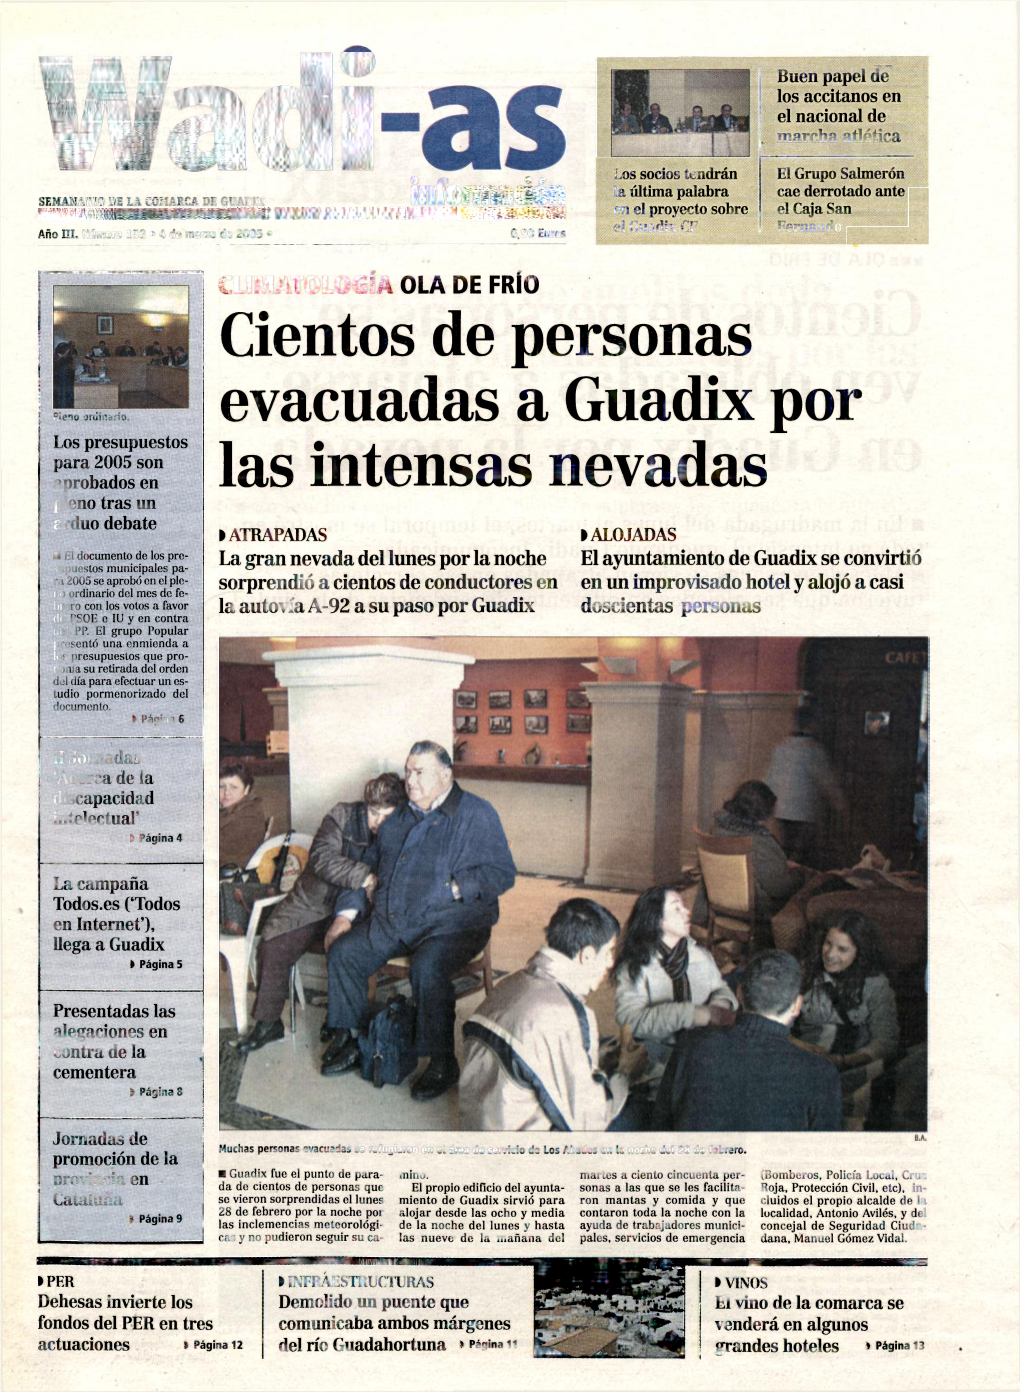 Cientos De Personas Evacuadas a Guadix Por Las Intensas Nevadas